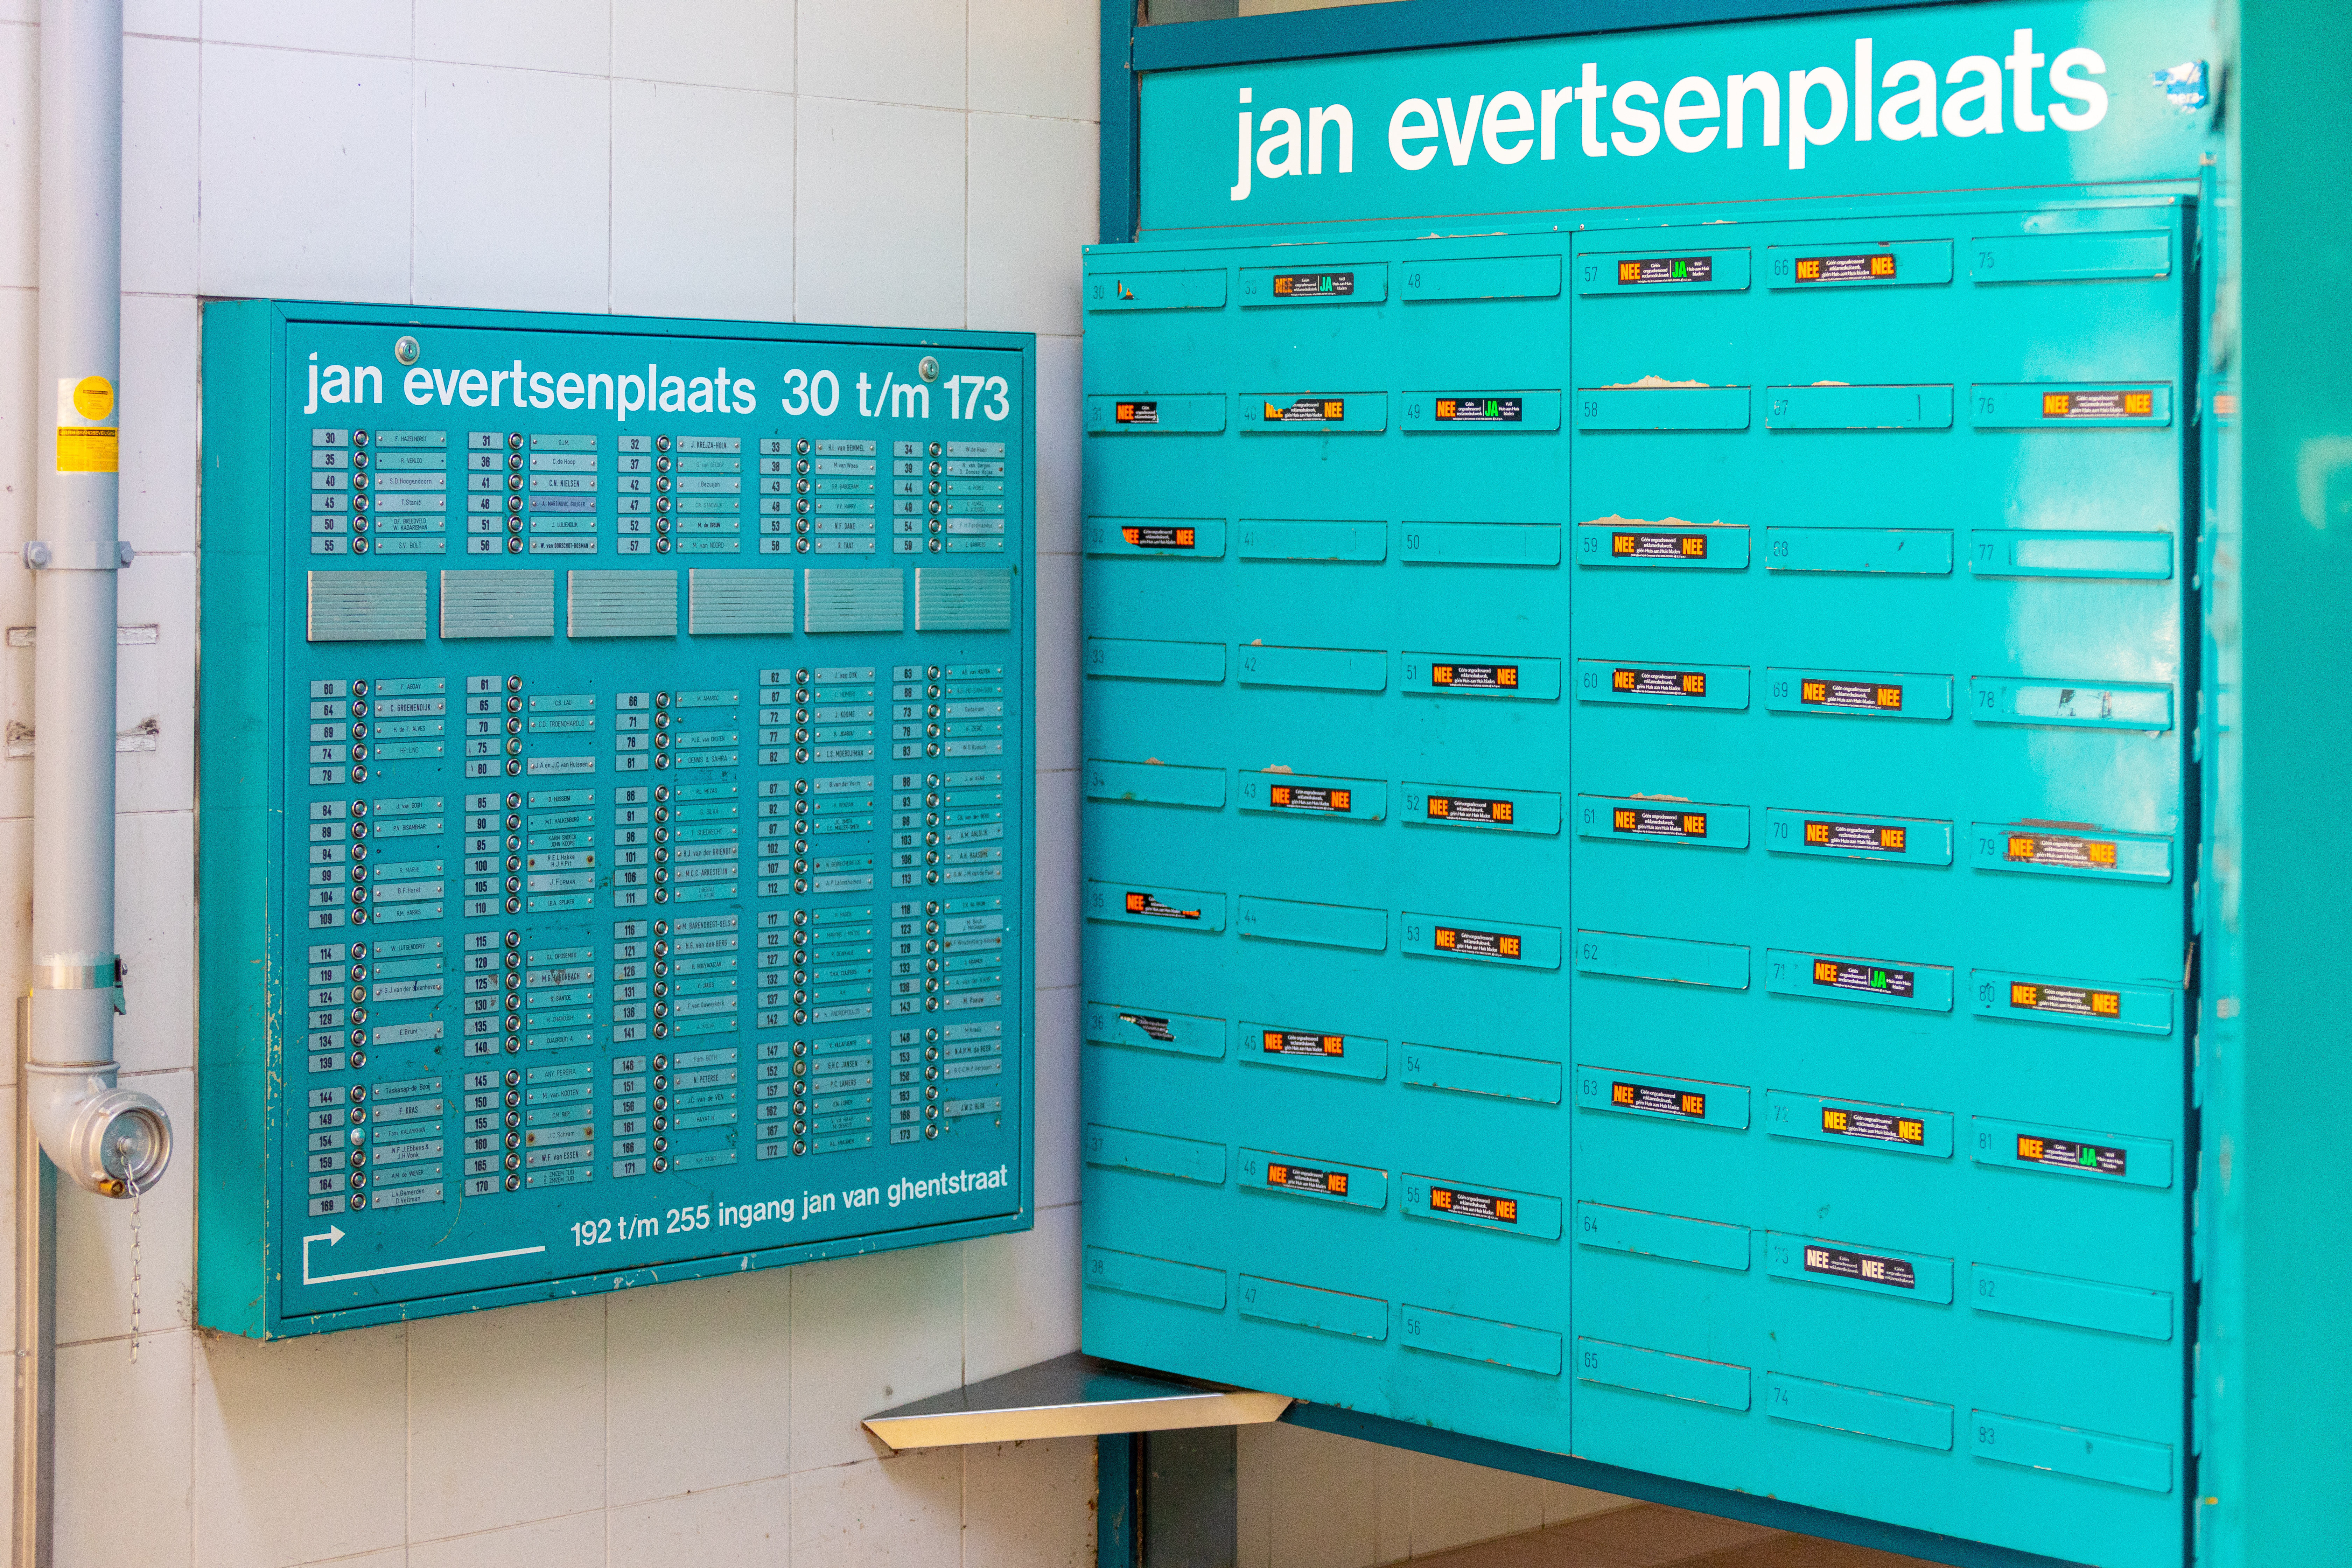 Türkise Briefkästen in den Niederlanden